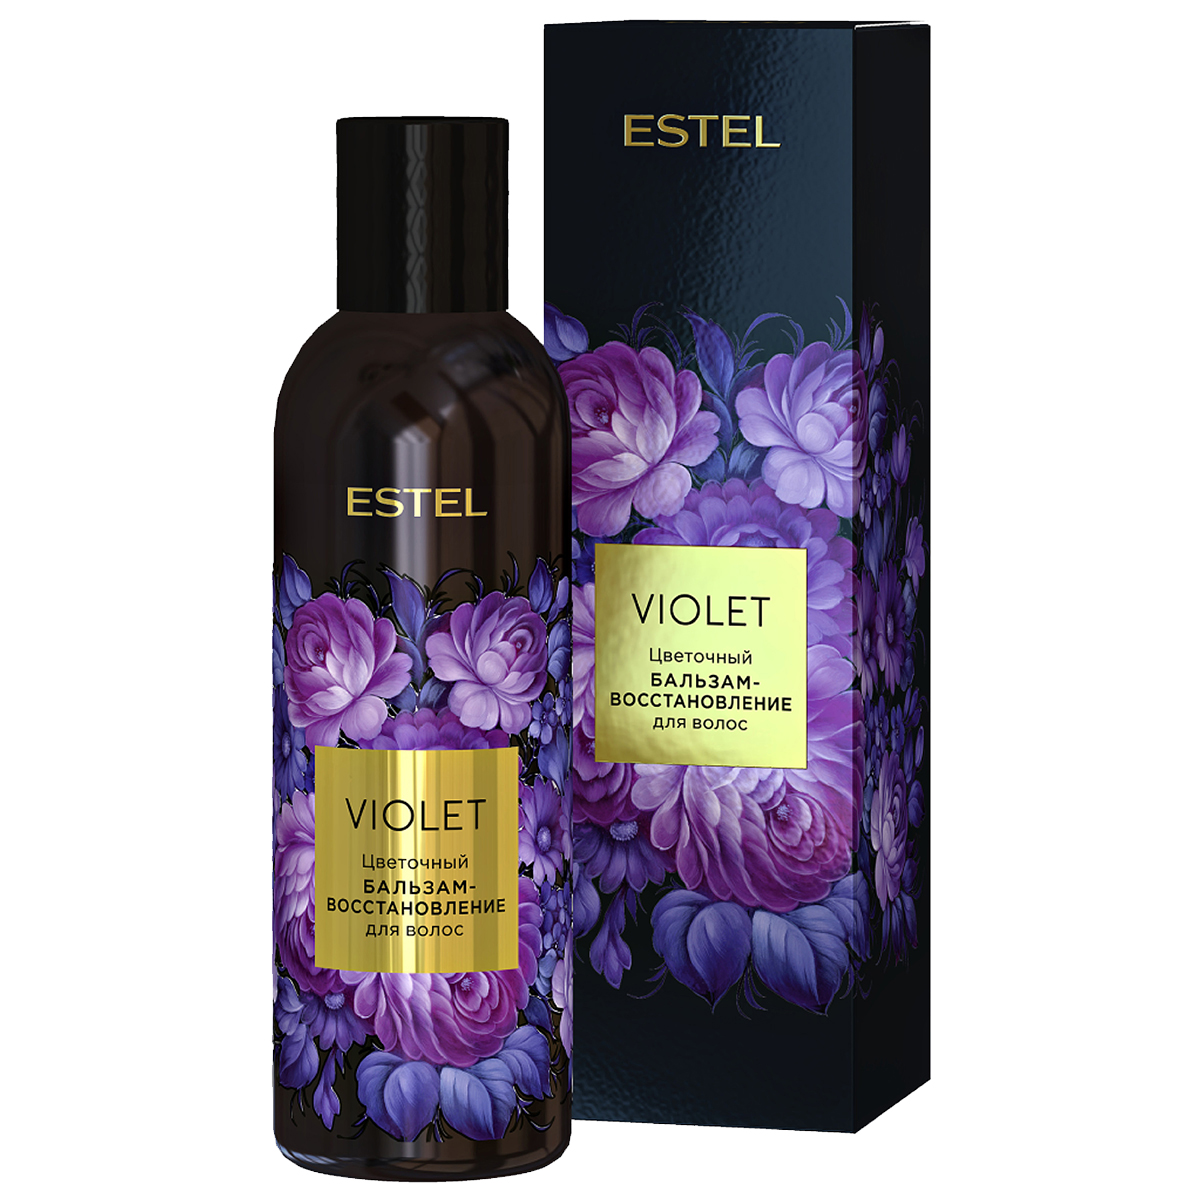 бальзам-восстановление ESTEL VIOLET для волос цветочный 200 мл рецепты бабушки агафьи шампунь бальзам детский с витамином в5 для волос лёгкое расчёсывание